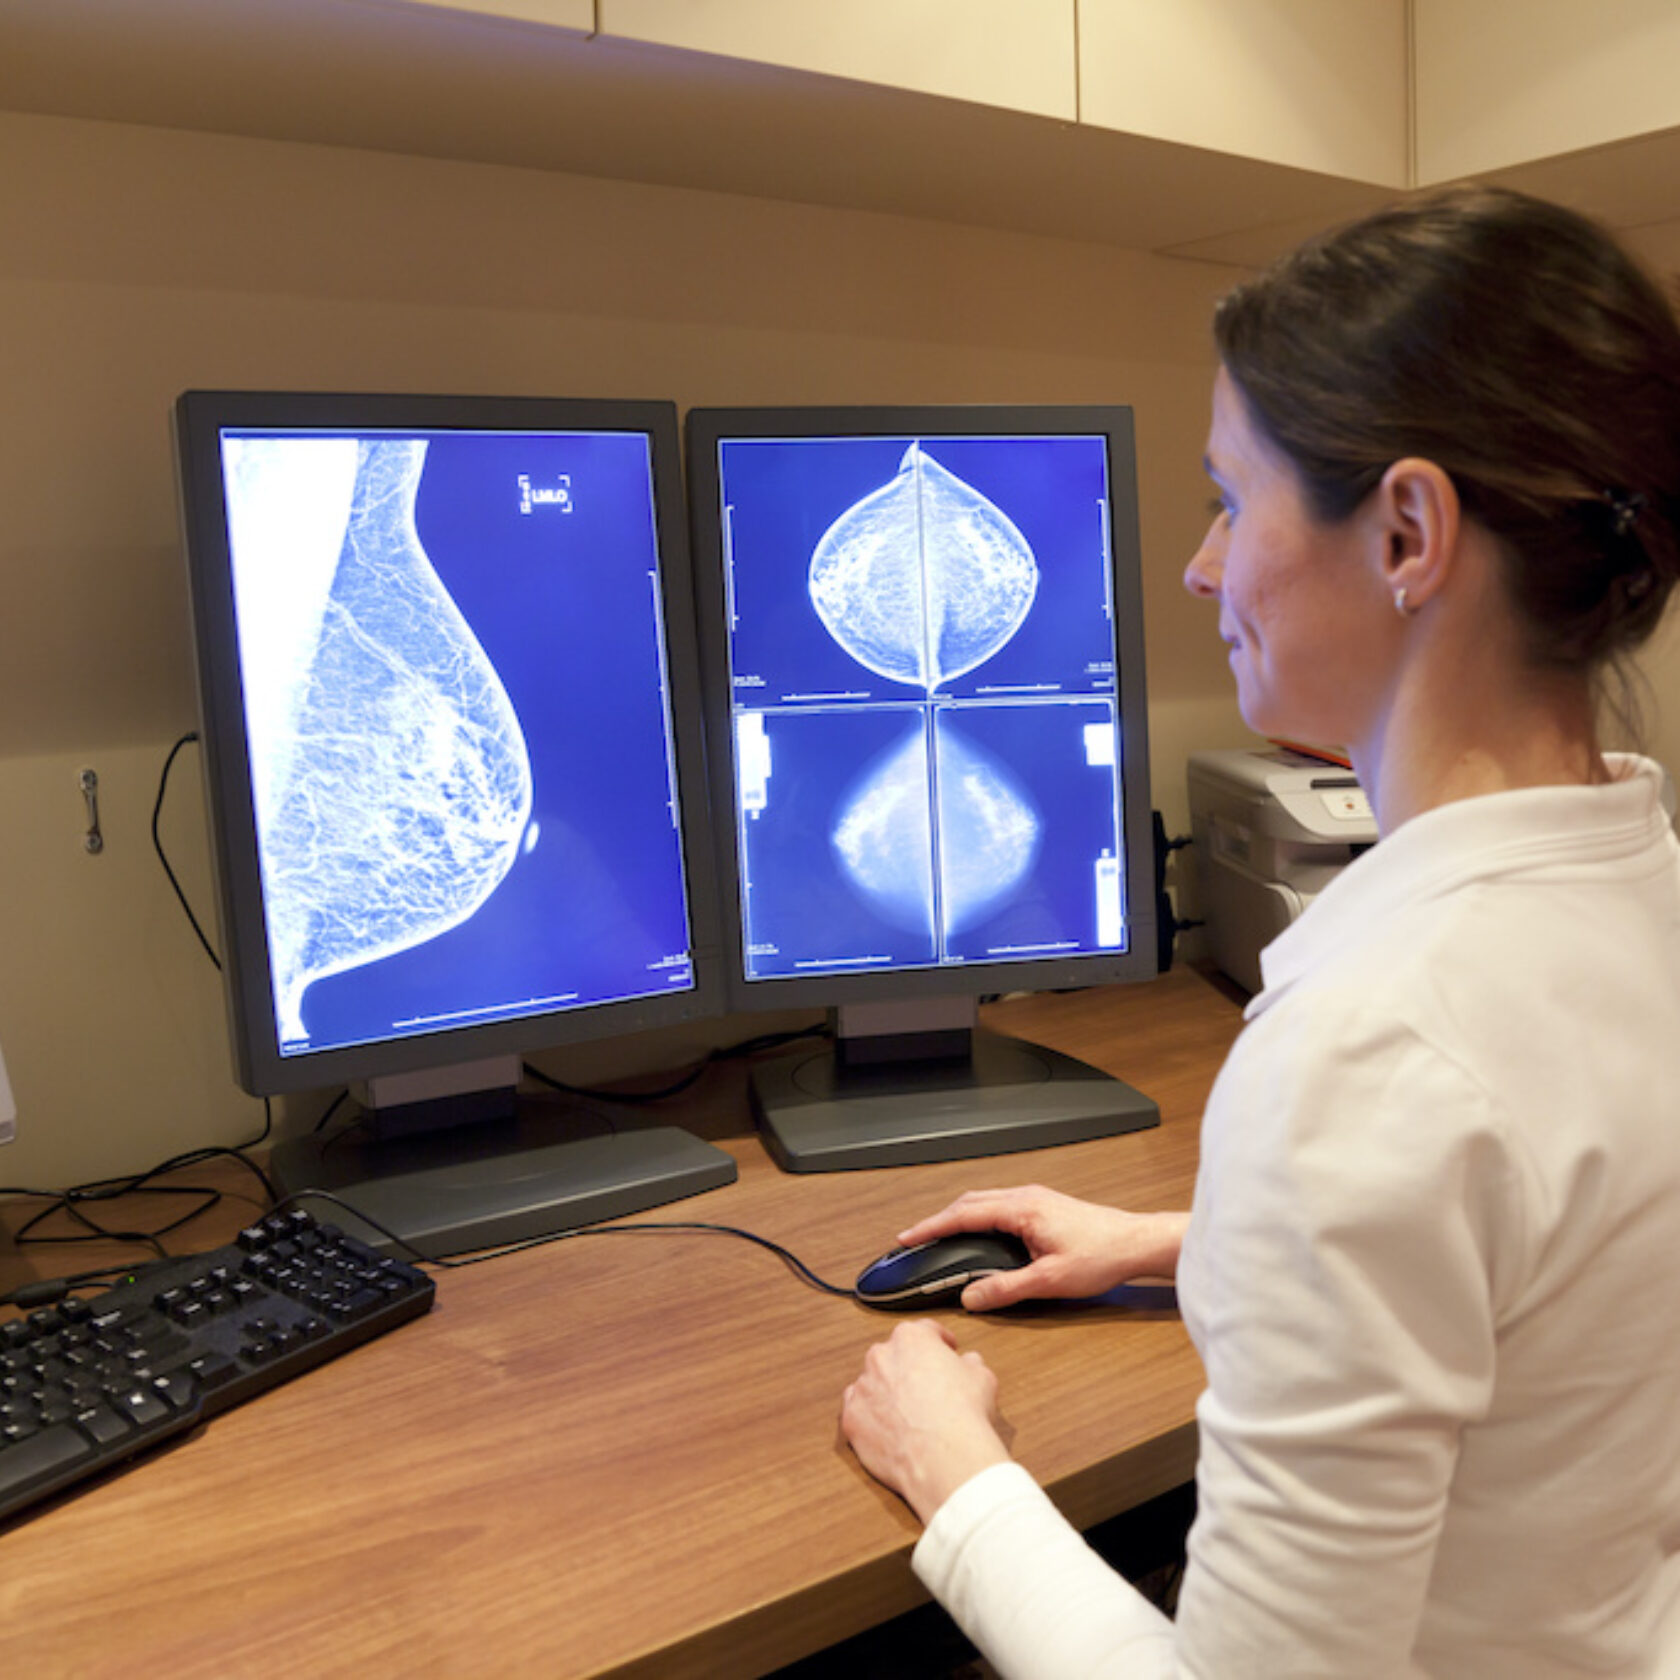 Ärztin betrachtet digitale Aufnahme von Brustkrebs am Monitor